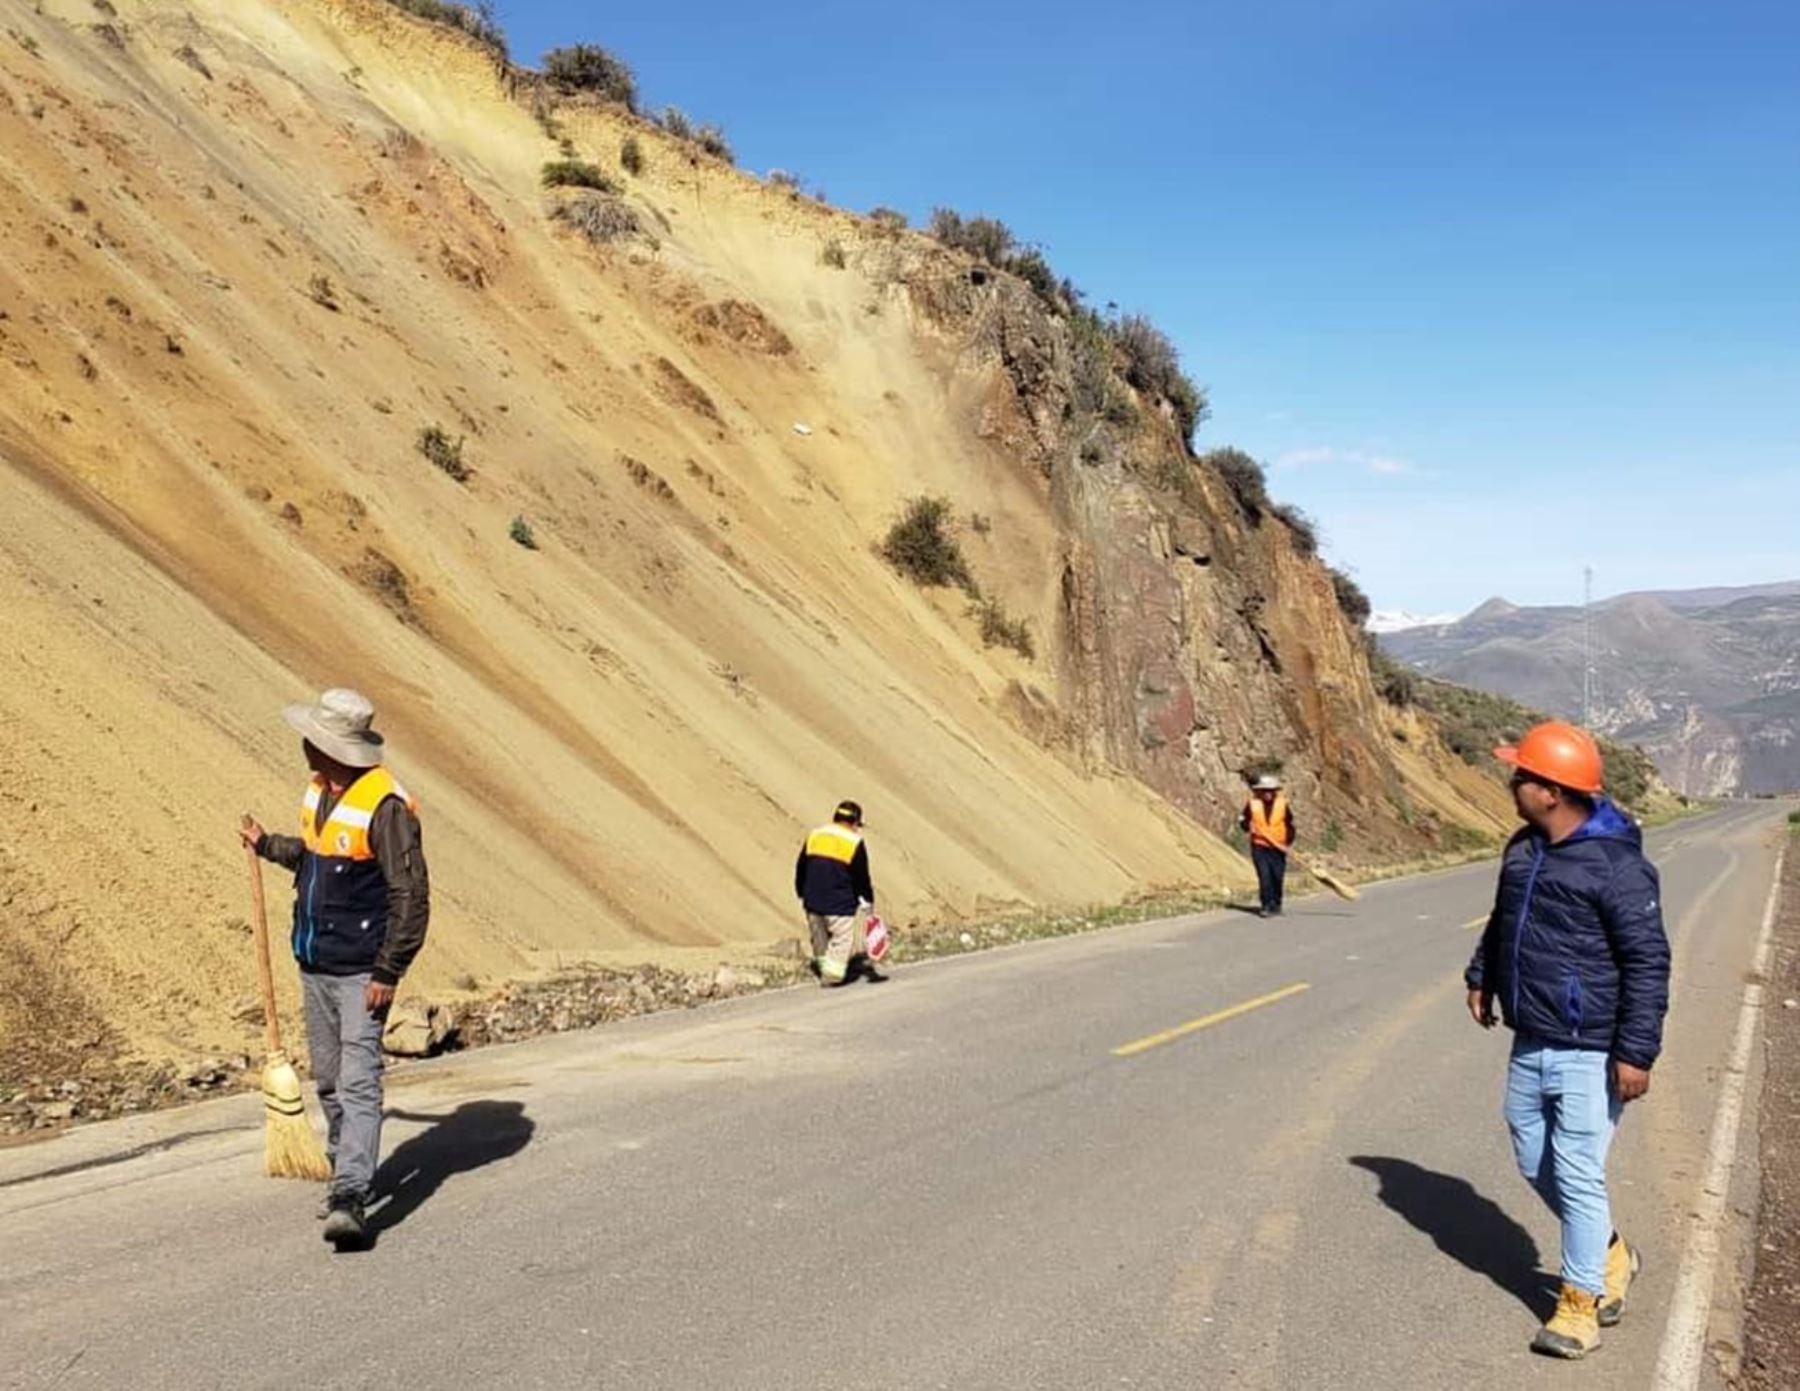 Las vías que conducen a los atractivos turísticos del valle del Colca, en Arequipa, se encuentran habilitados tras concluir los trabajos de limpieza y mantenimiento que se realizaron por la caída de rocas y tierra. Foto: ANDINA/difusión.